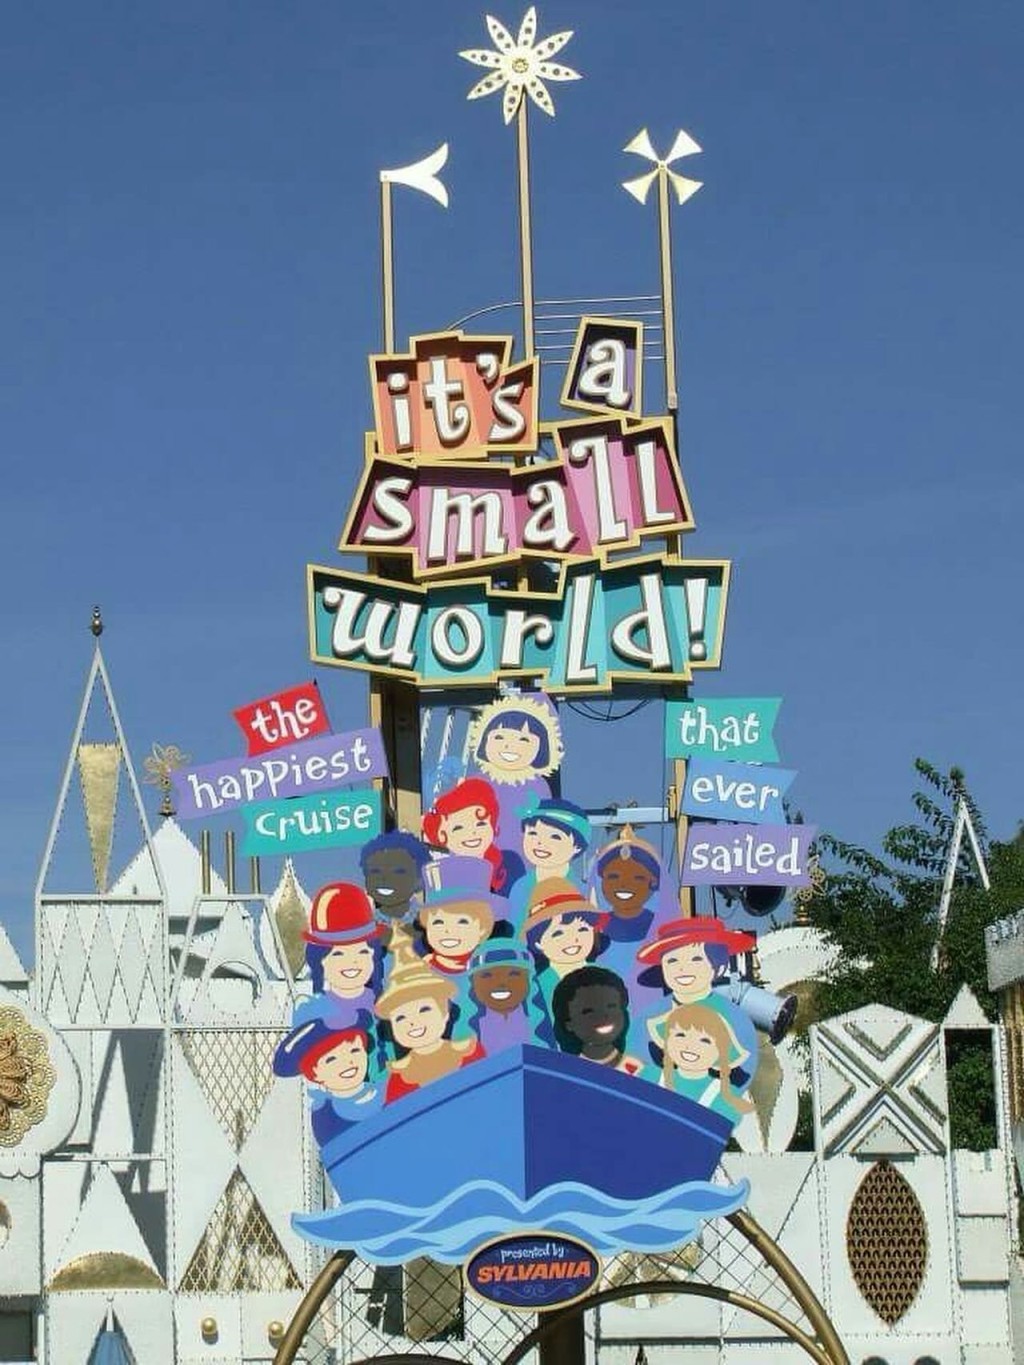 舍曼创作的《世界真细小》成为迪士尼的主题曲。